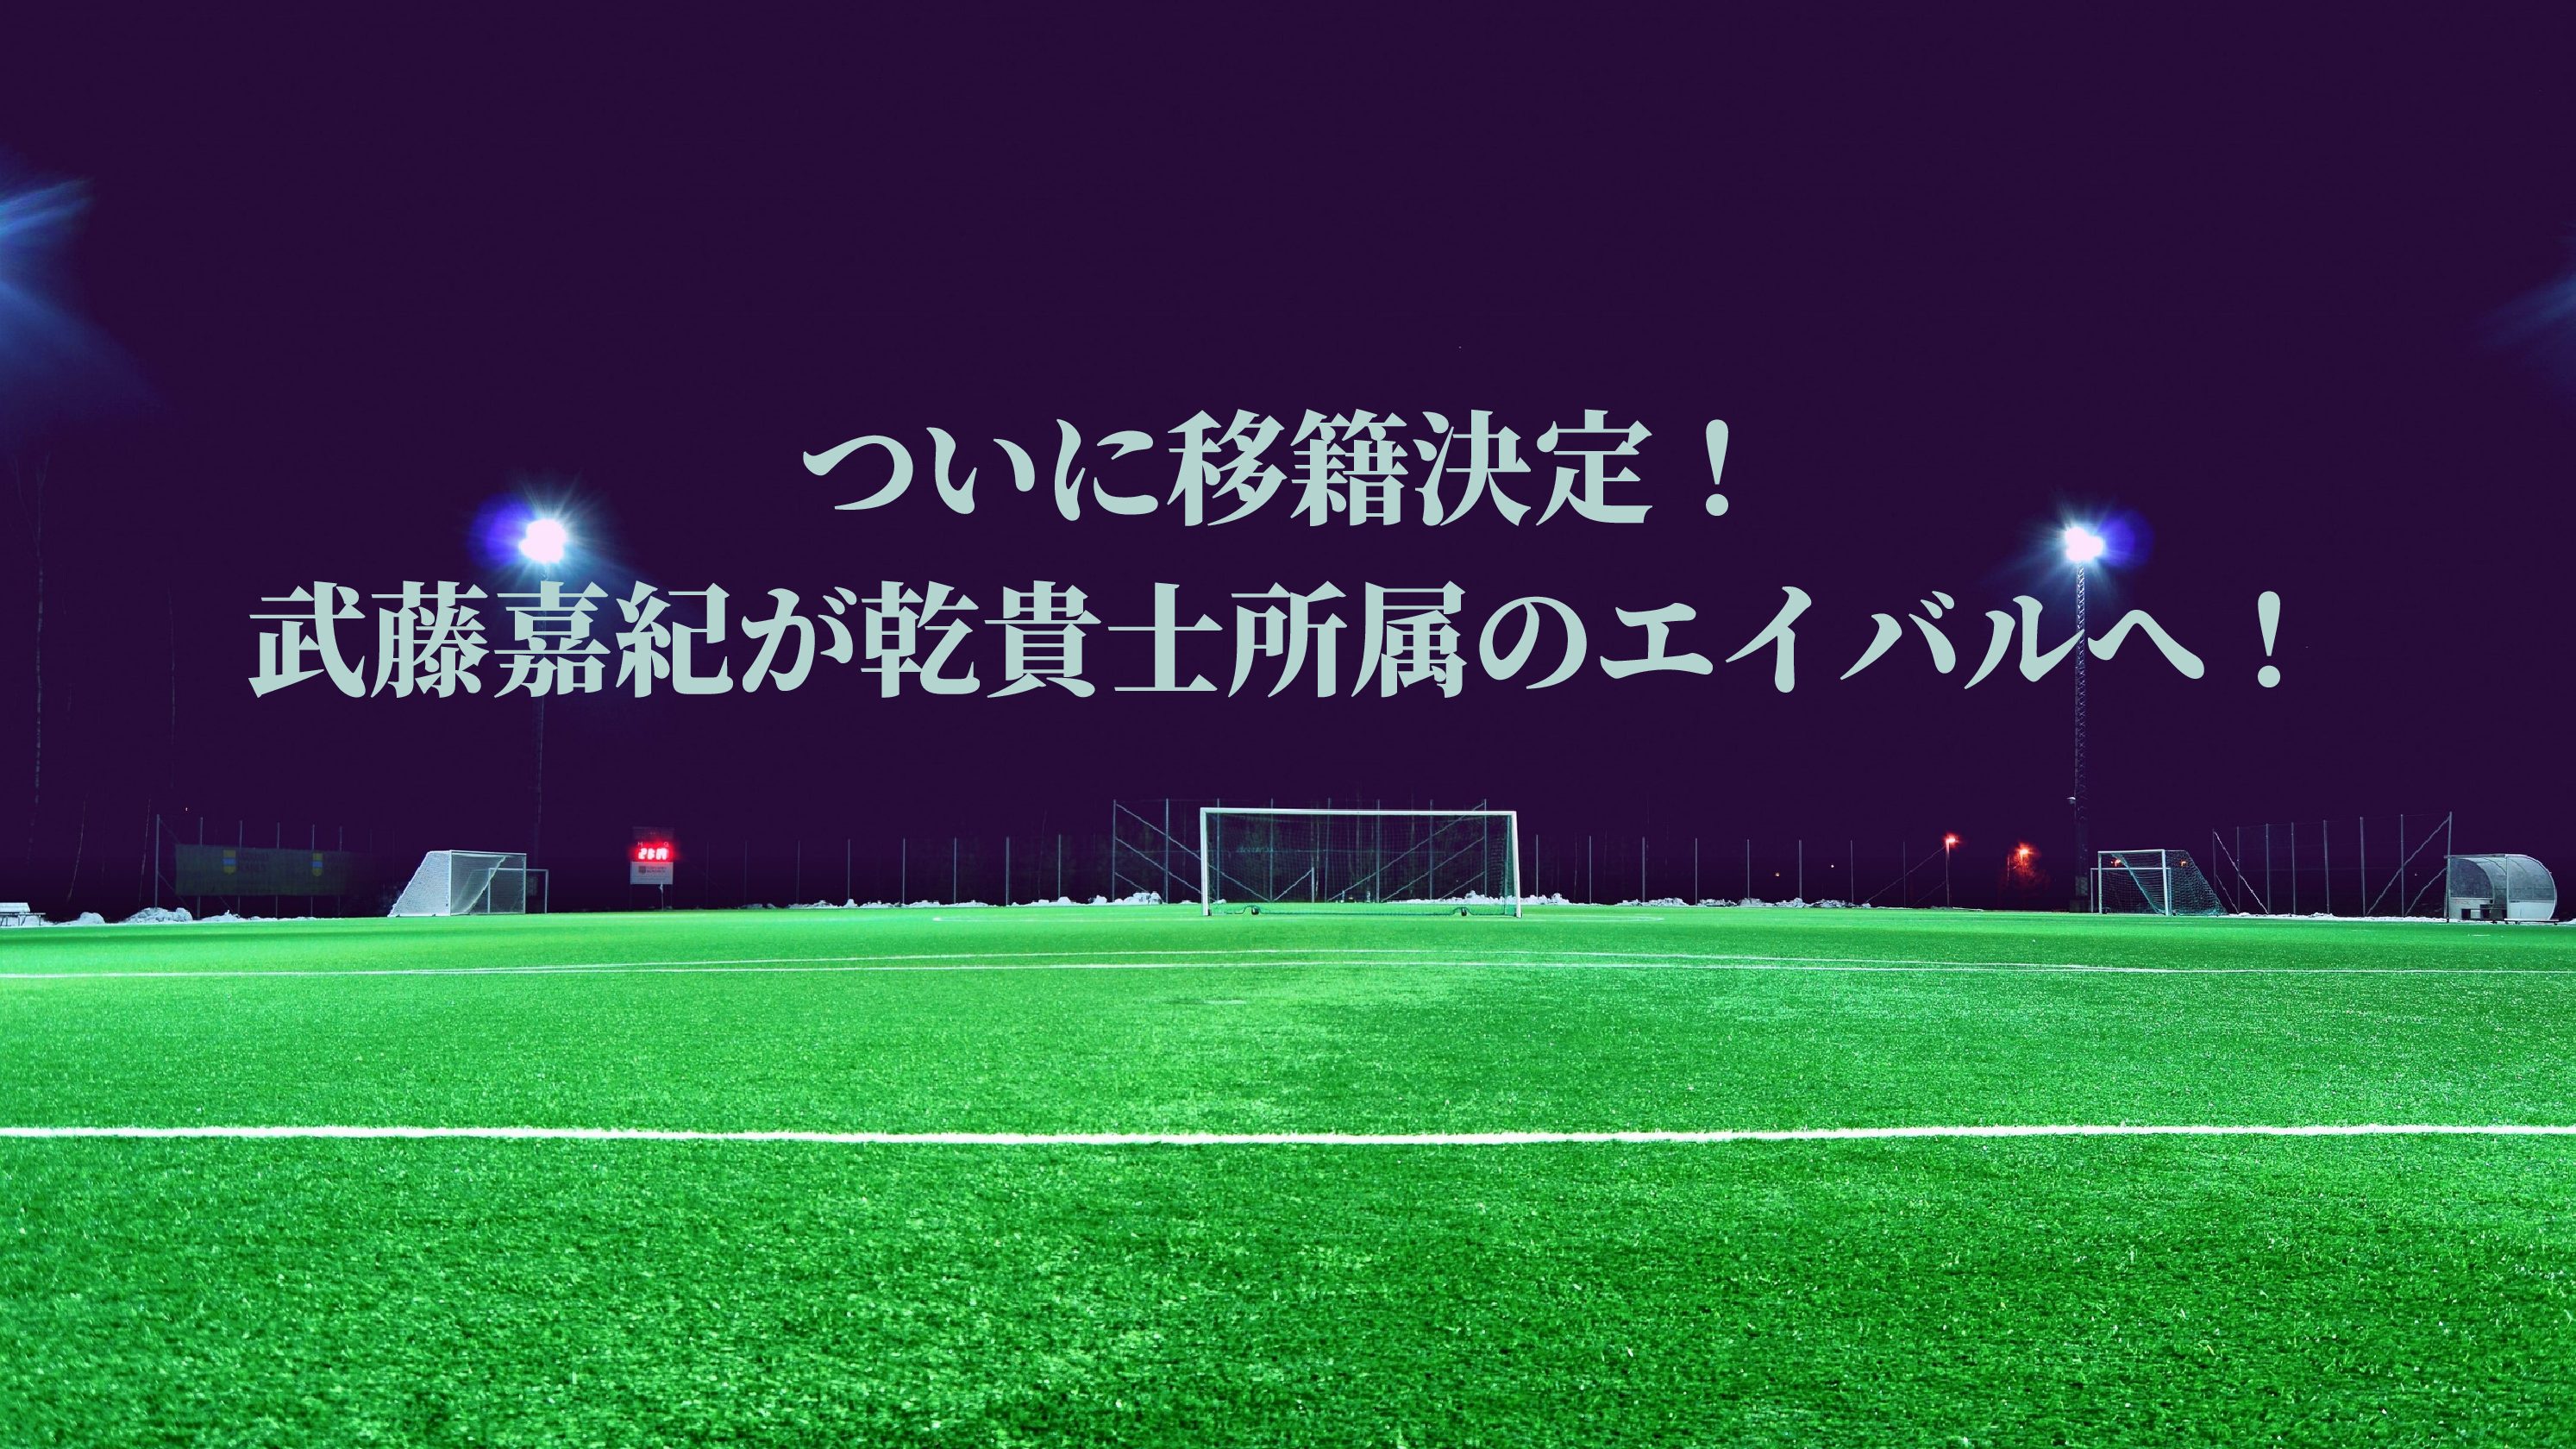 21川崎フロンターレの試合日程とテレビ放送 配信予定 無料で観るには サッカーぶんがく